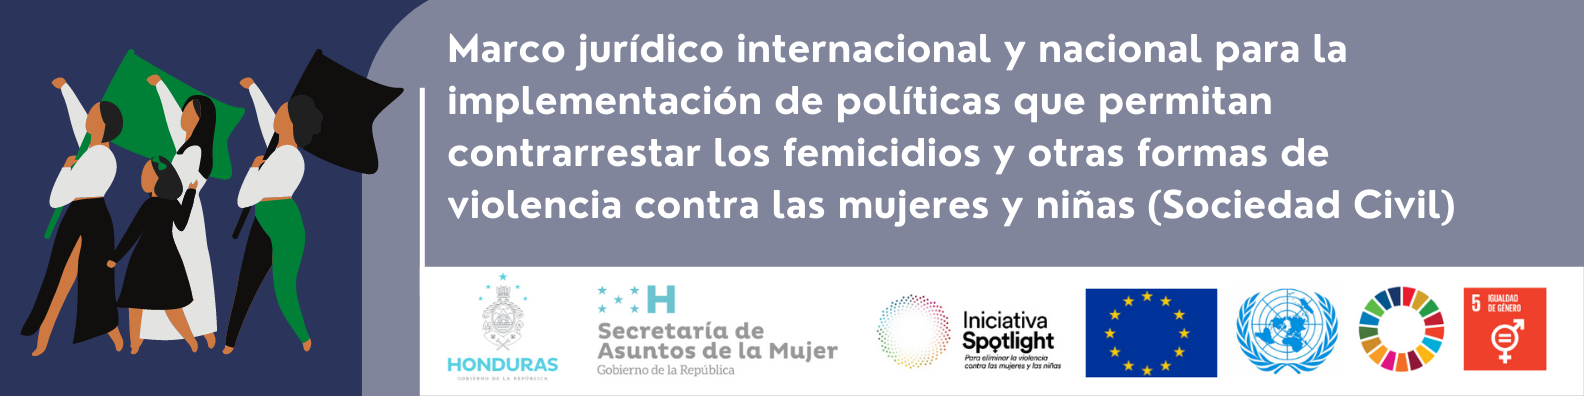 Marco jurídico internacional y nacional para la implementación de políticas que permitan contrarrestar los femicidios y otras formas de violencia contra las mujeres y niñas (Sociedad Civil)